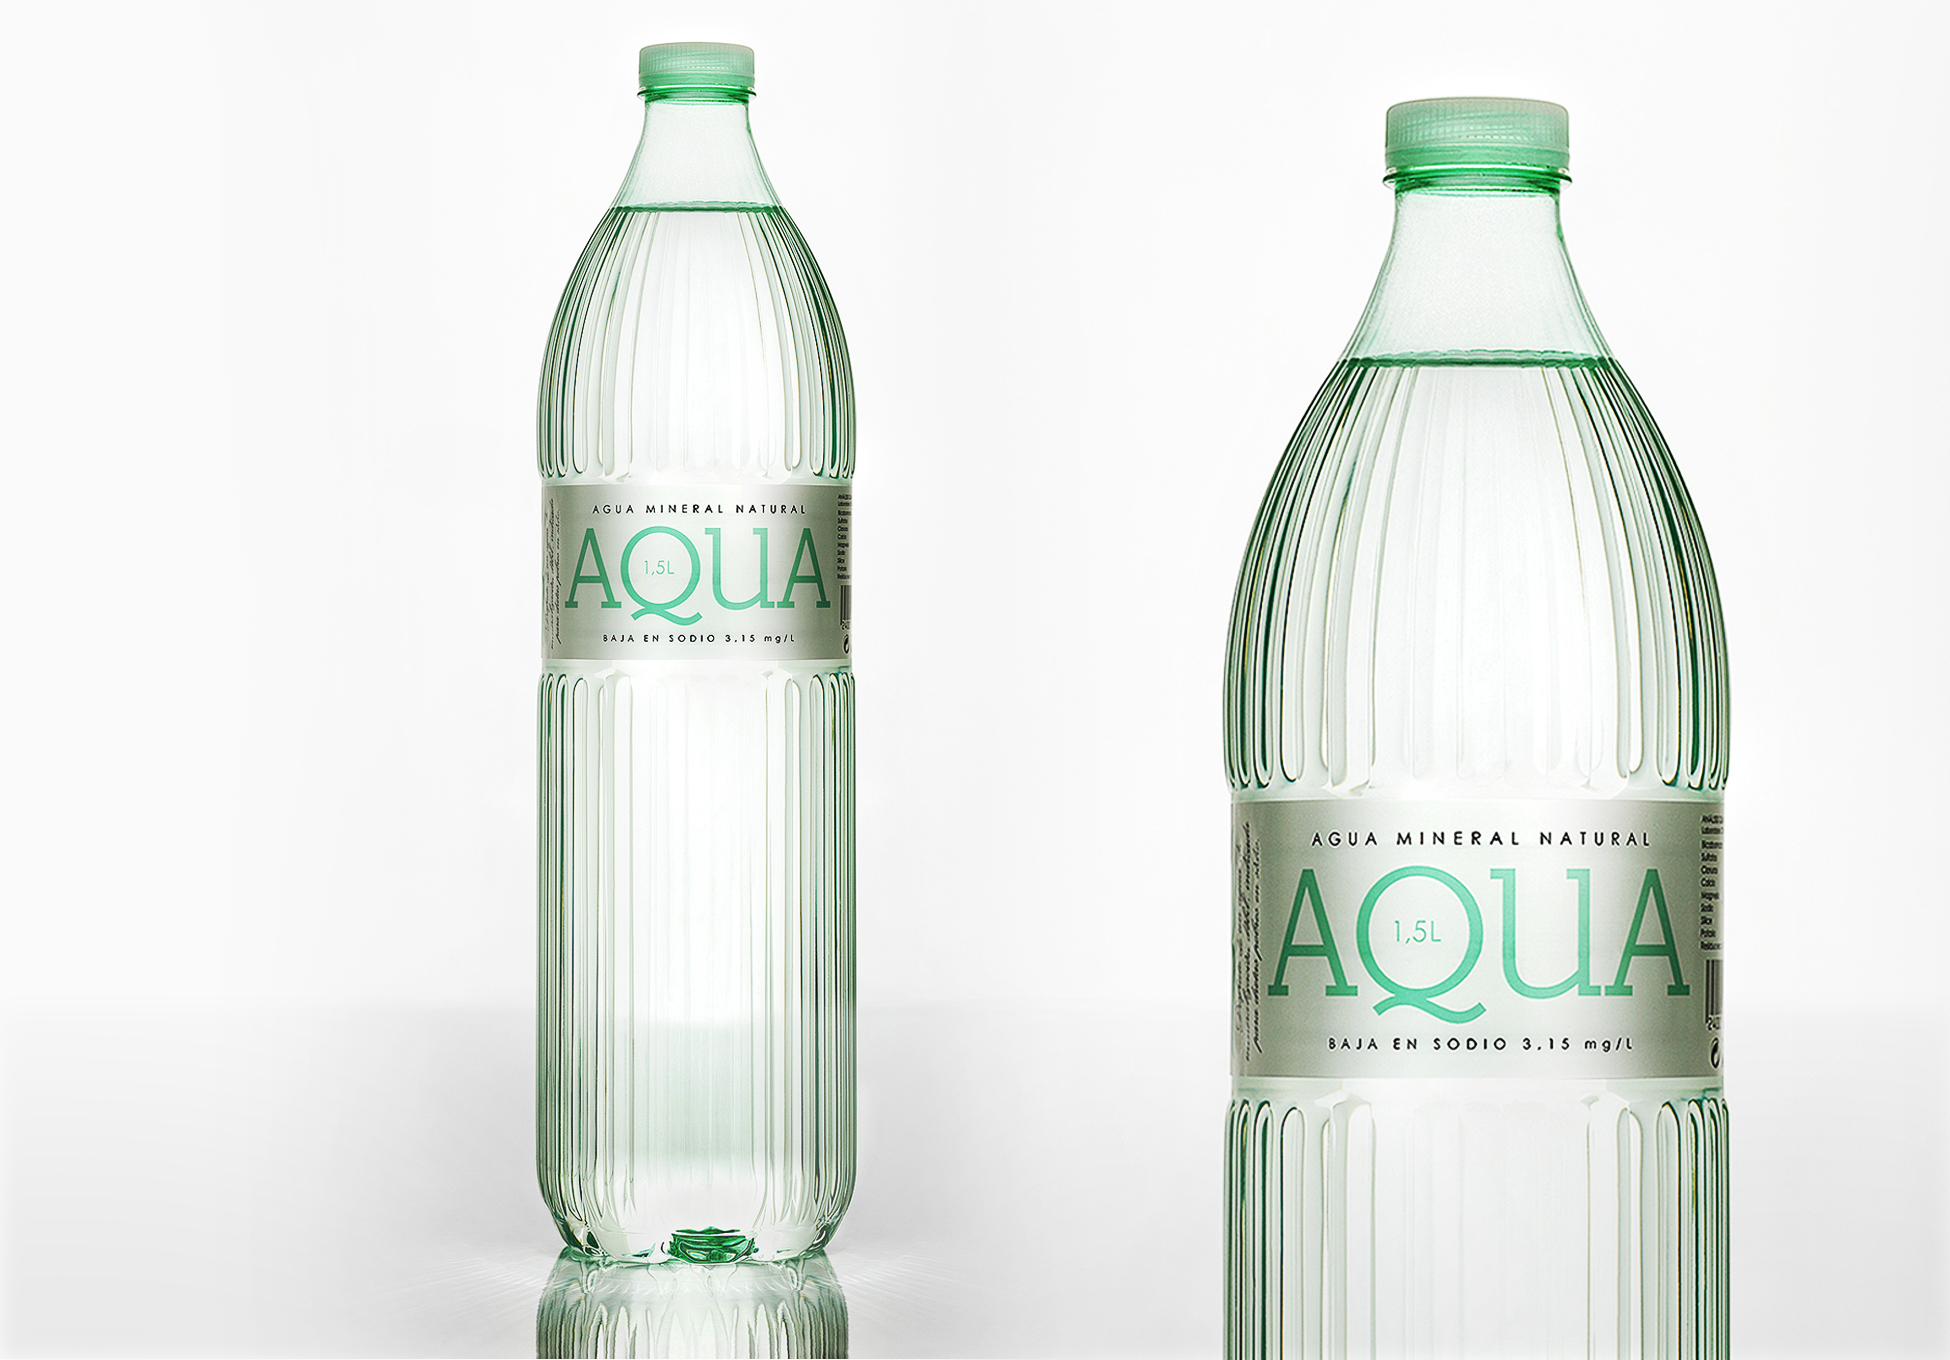 AQUA. Mineral water